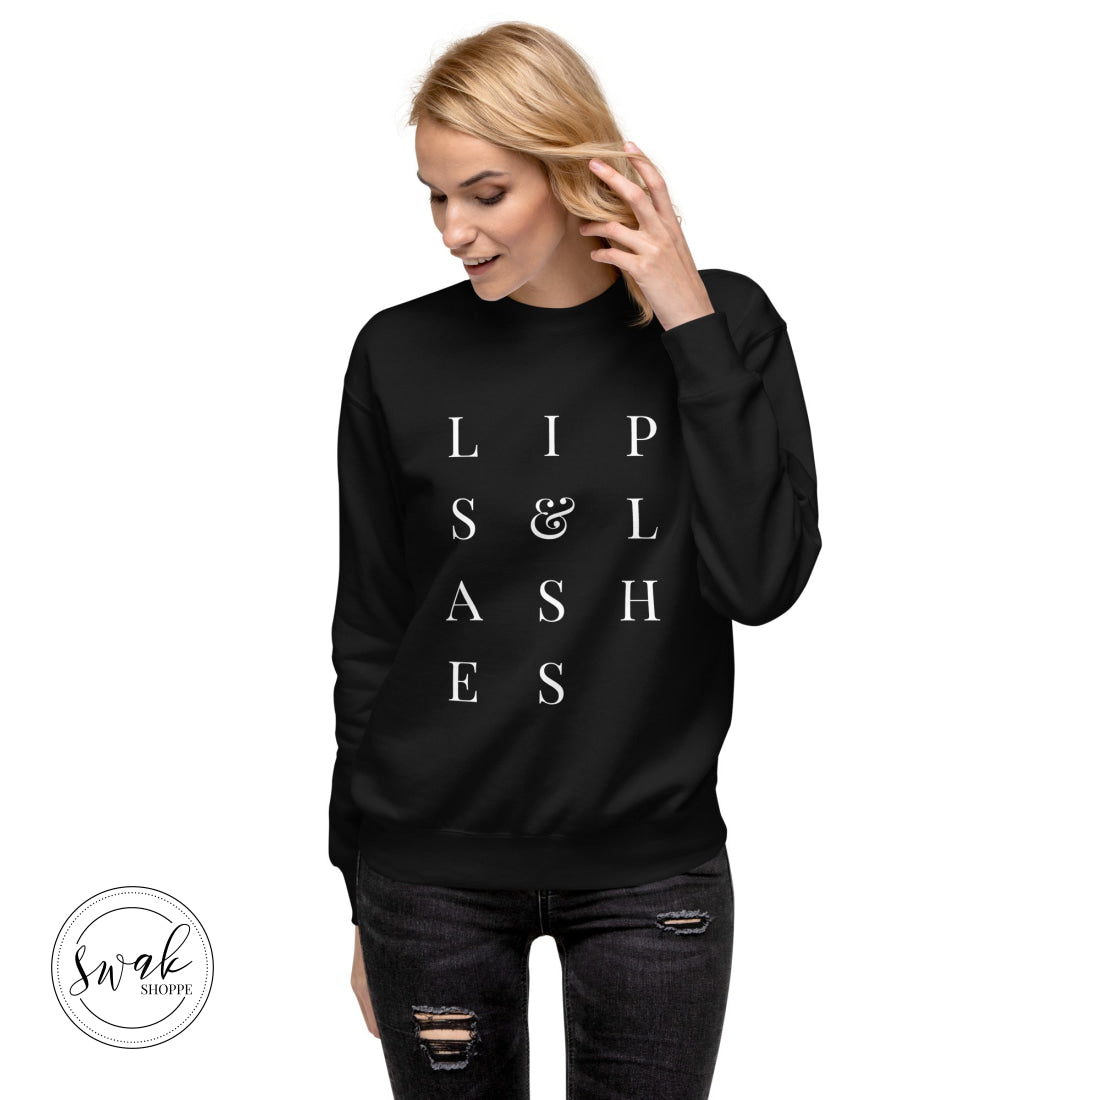 Lips & Lashes Mua White Text Unisex Fashion Sweatshirt